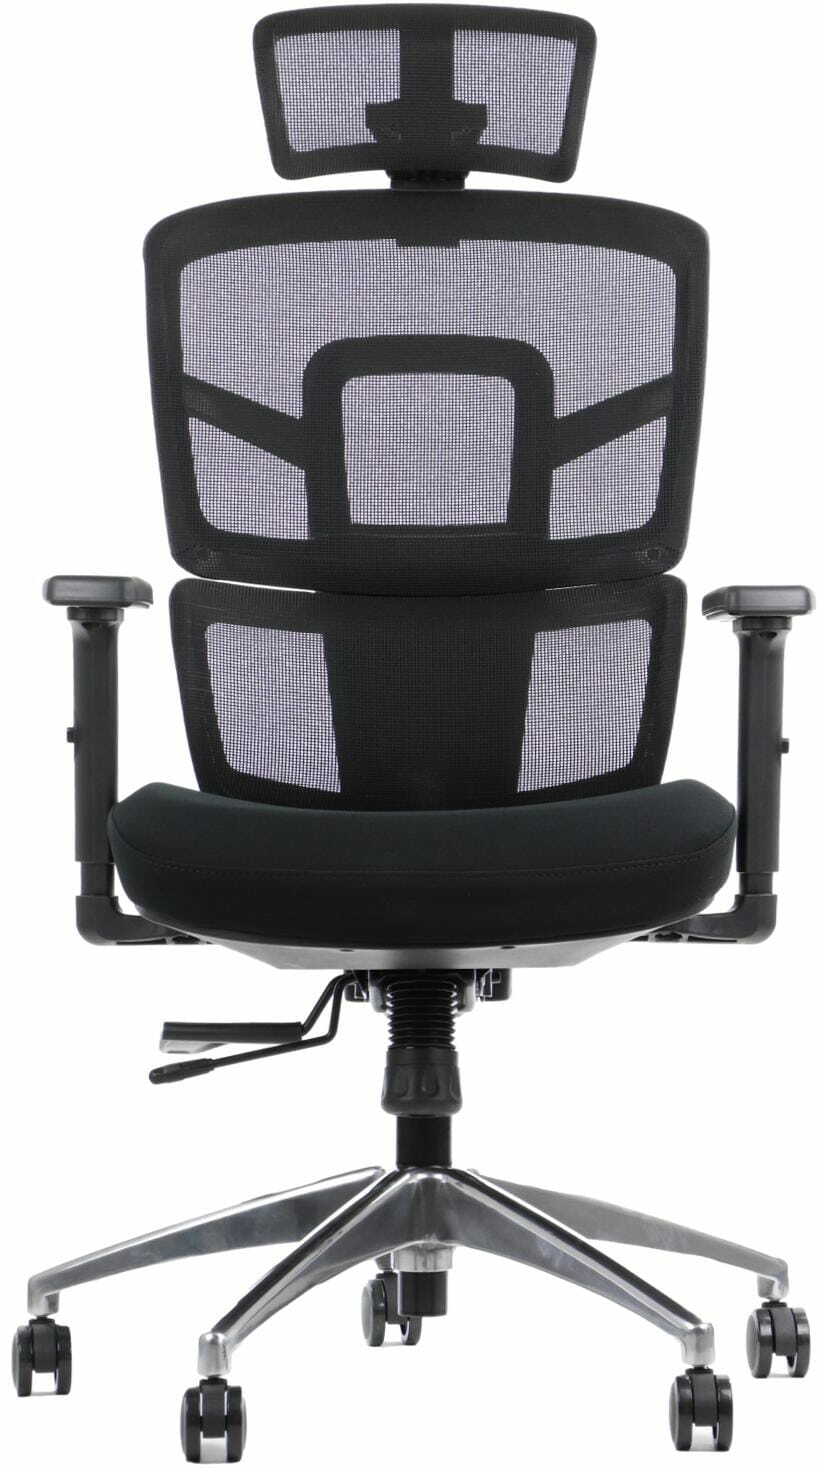 Ergonomiczne krzesło biurowe TREX CZARNY - wysuw siedziska, regulowane podłokietniki i zagłówek, oparcie siatkowe, podstawa aluminiowa - fotel obrotowy do 8-godzinnej pracy